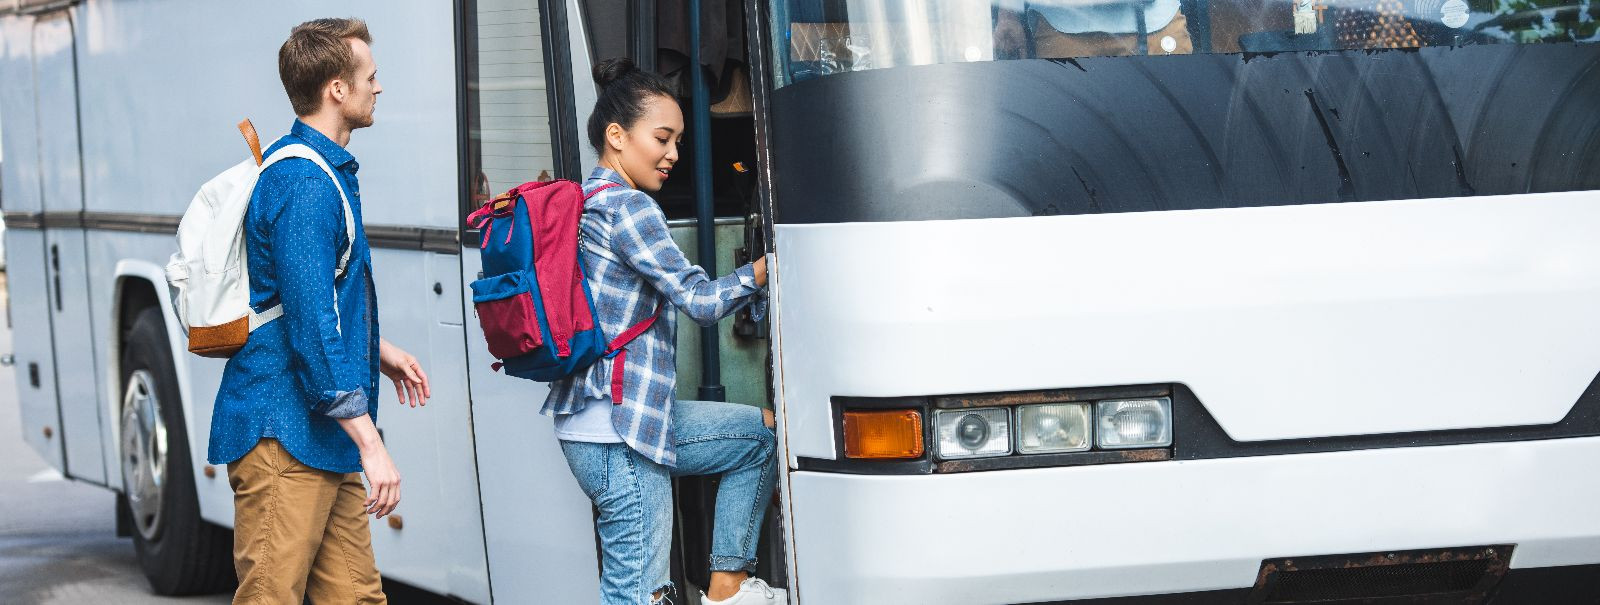 Koolireisi planeerimisel on oluline osa transpordil, mis võib märkimisväärselt mõjutada kogu reisi kogemust. Sõiduki valikul tuleb arvestada mitte ainult eelarv